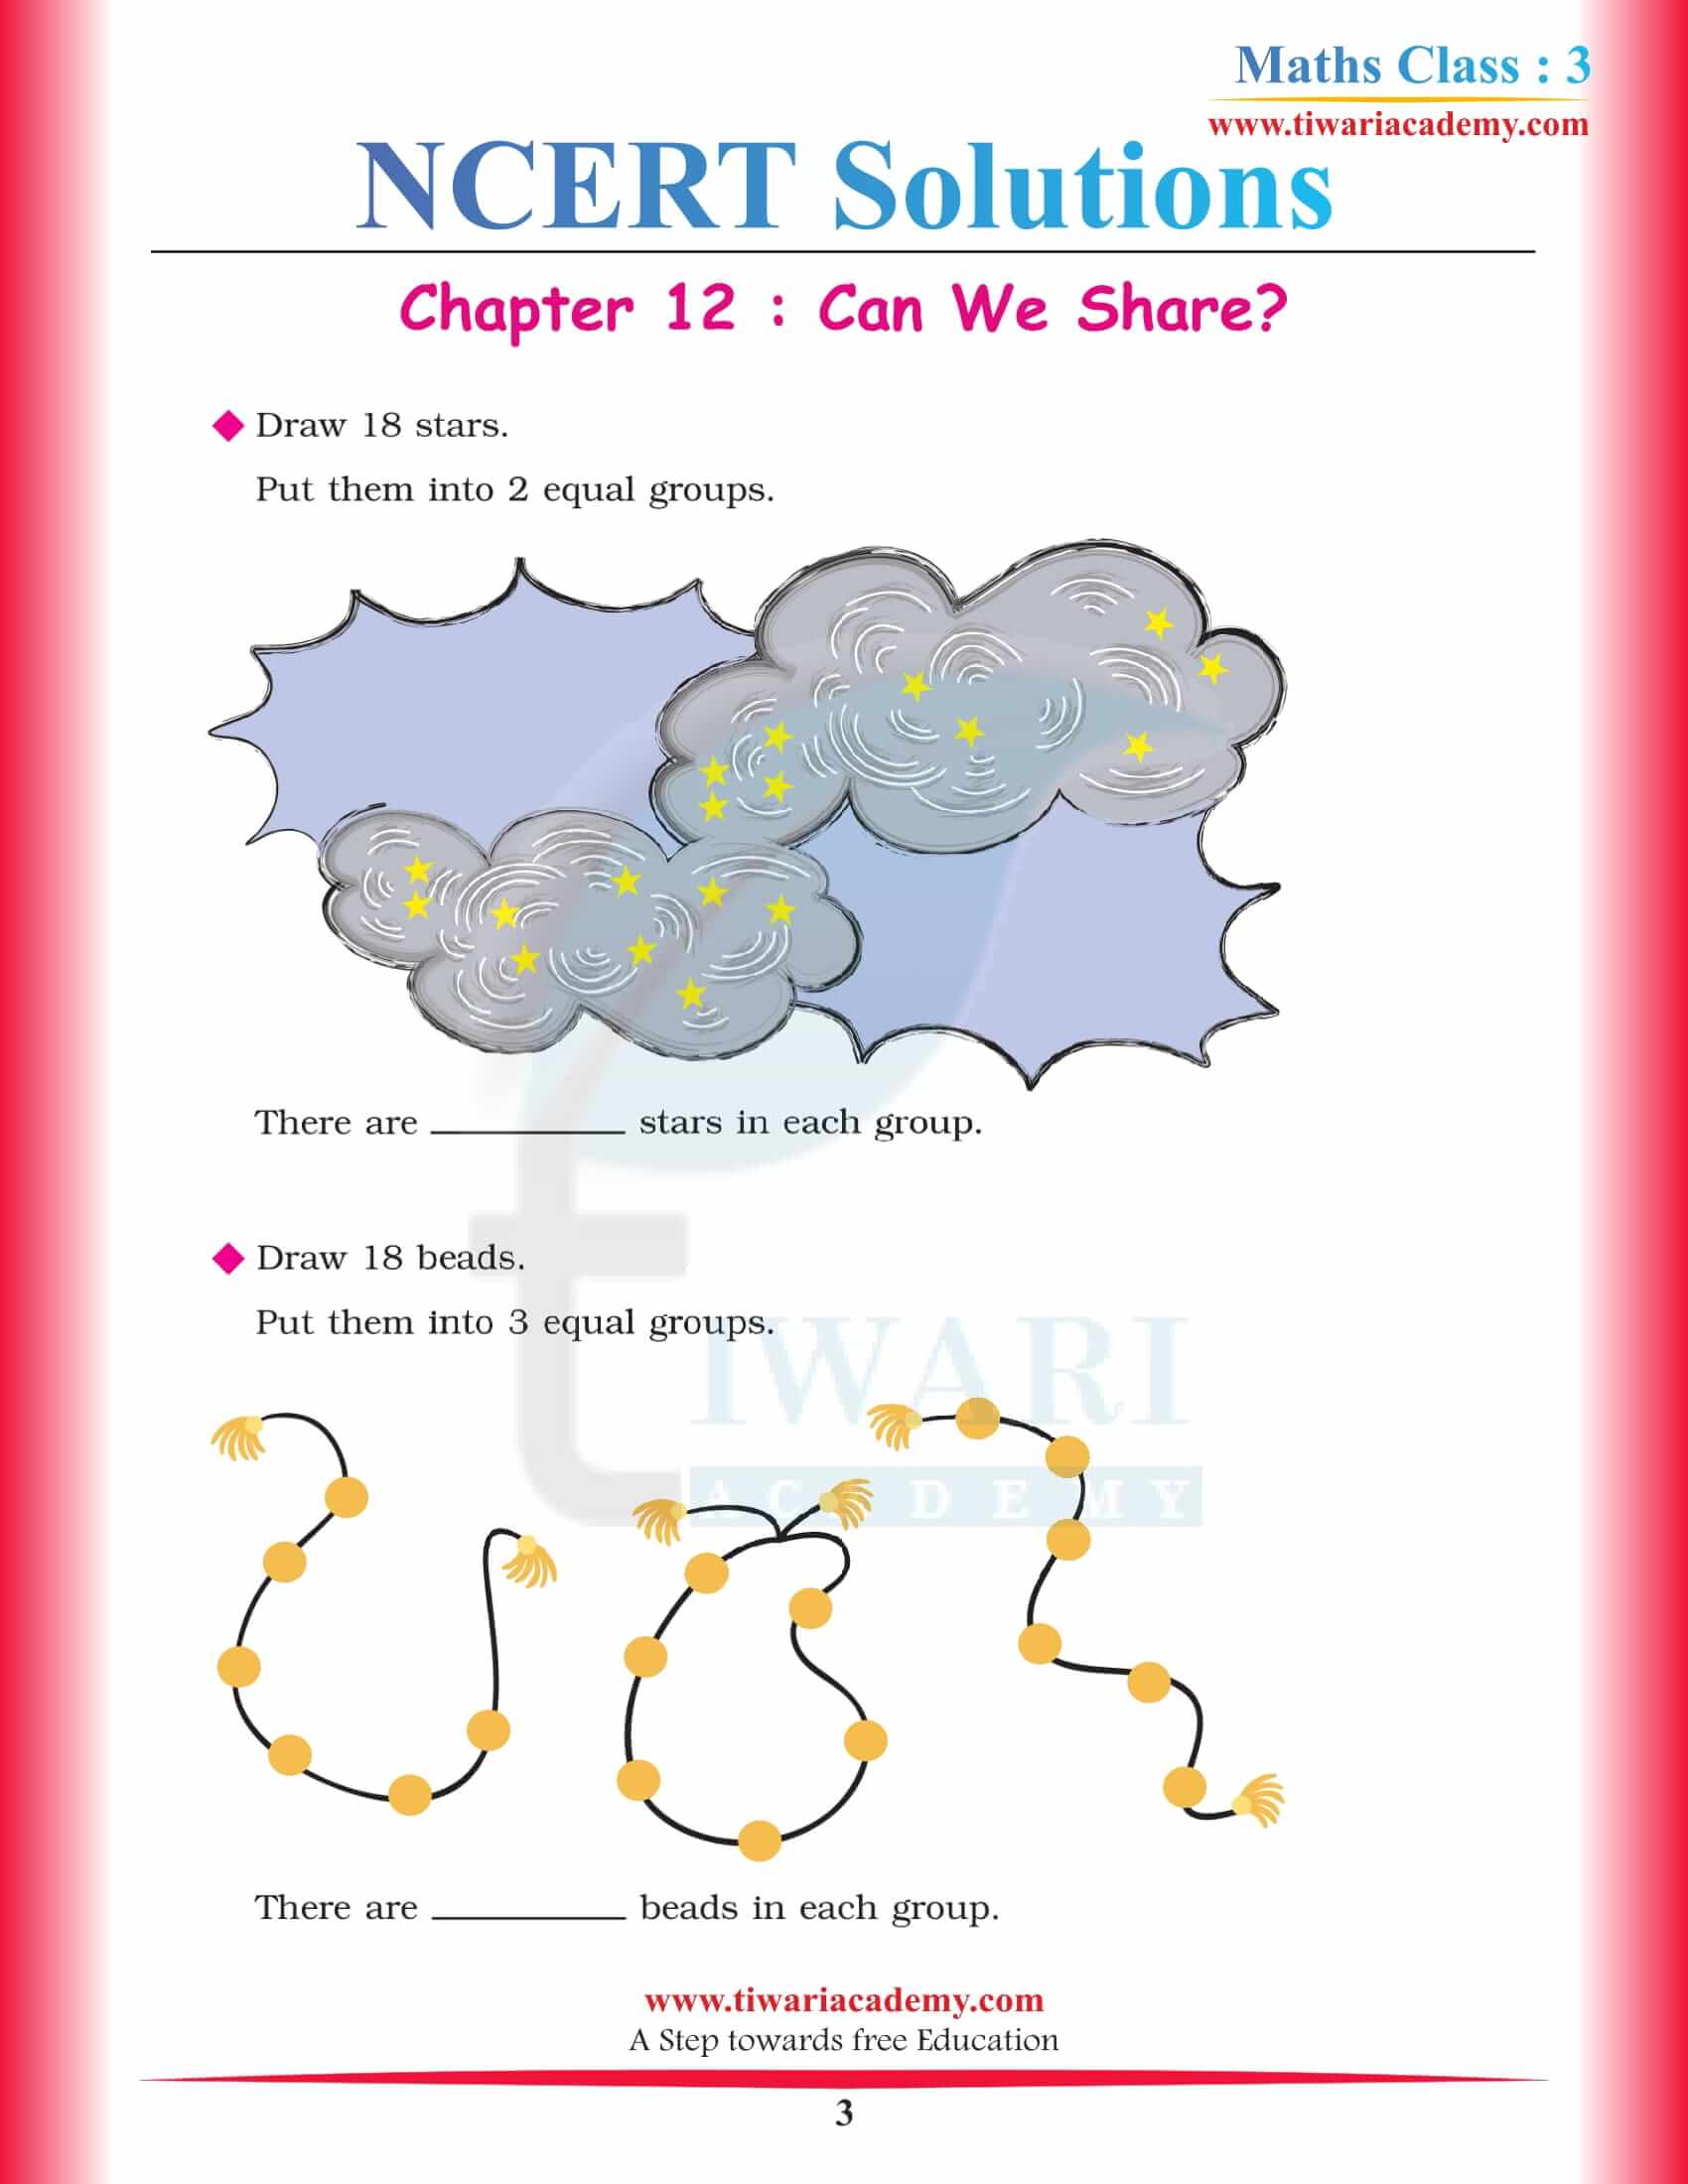 NCERT Solutions for Class 3 Maths Chapter 12